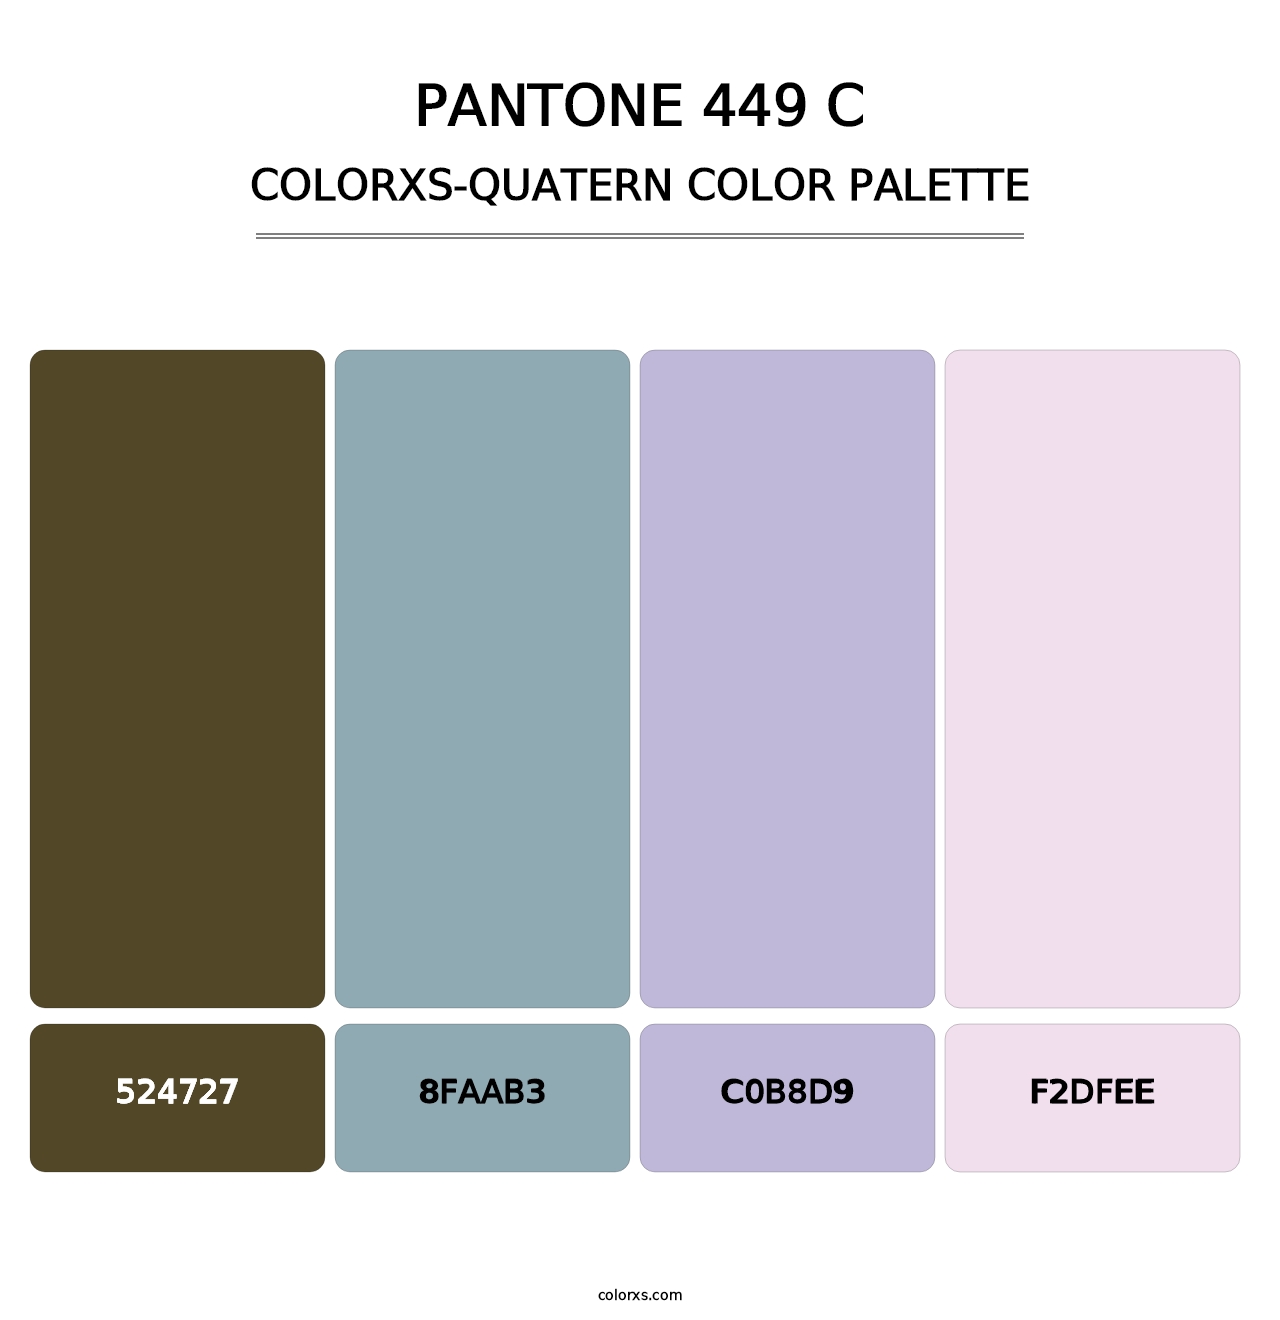 PANTONE 449 C - Colorxs Quatern Palette